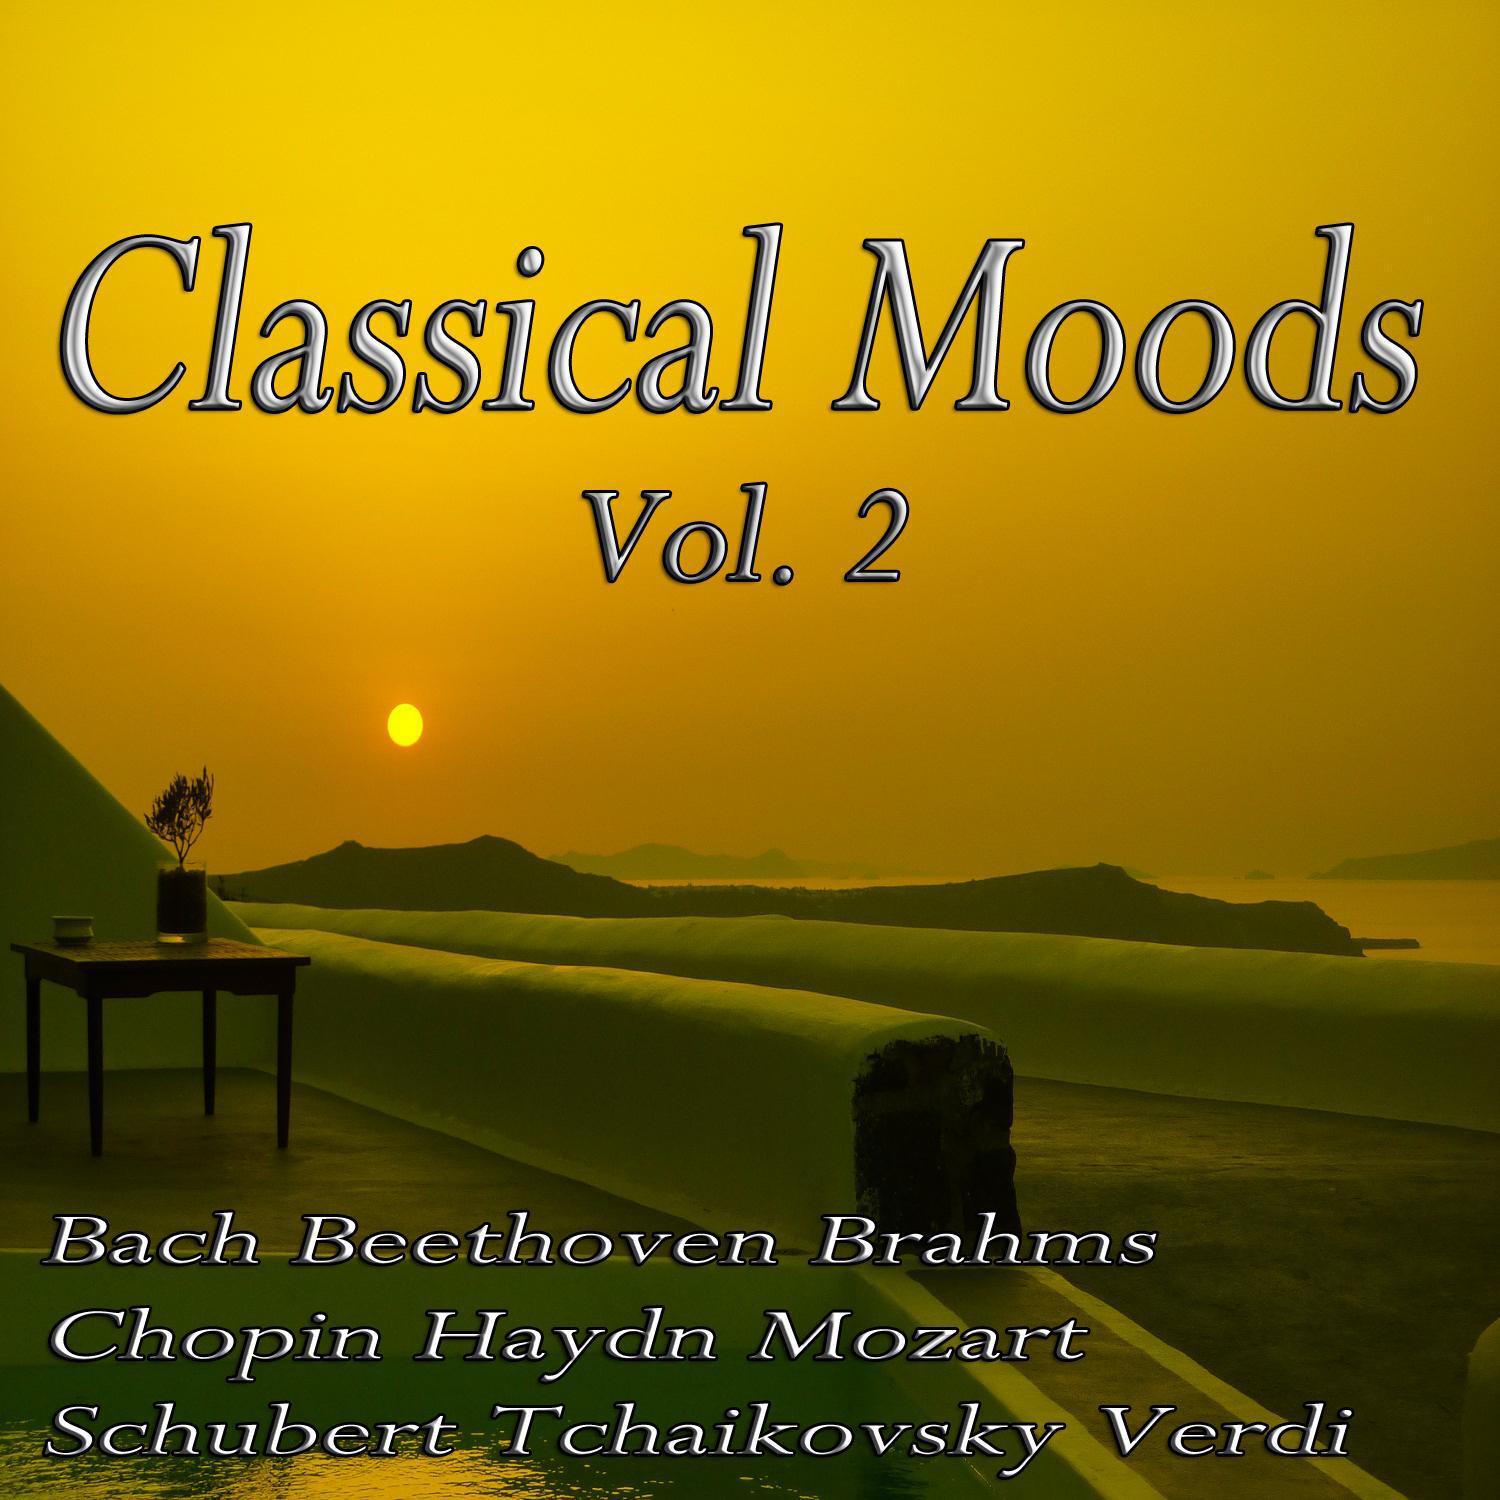 Classical Moods Vol. 2